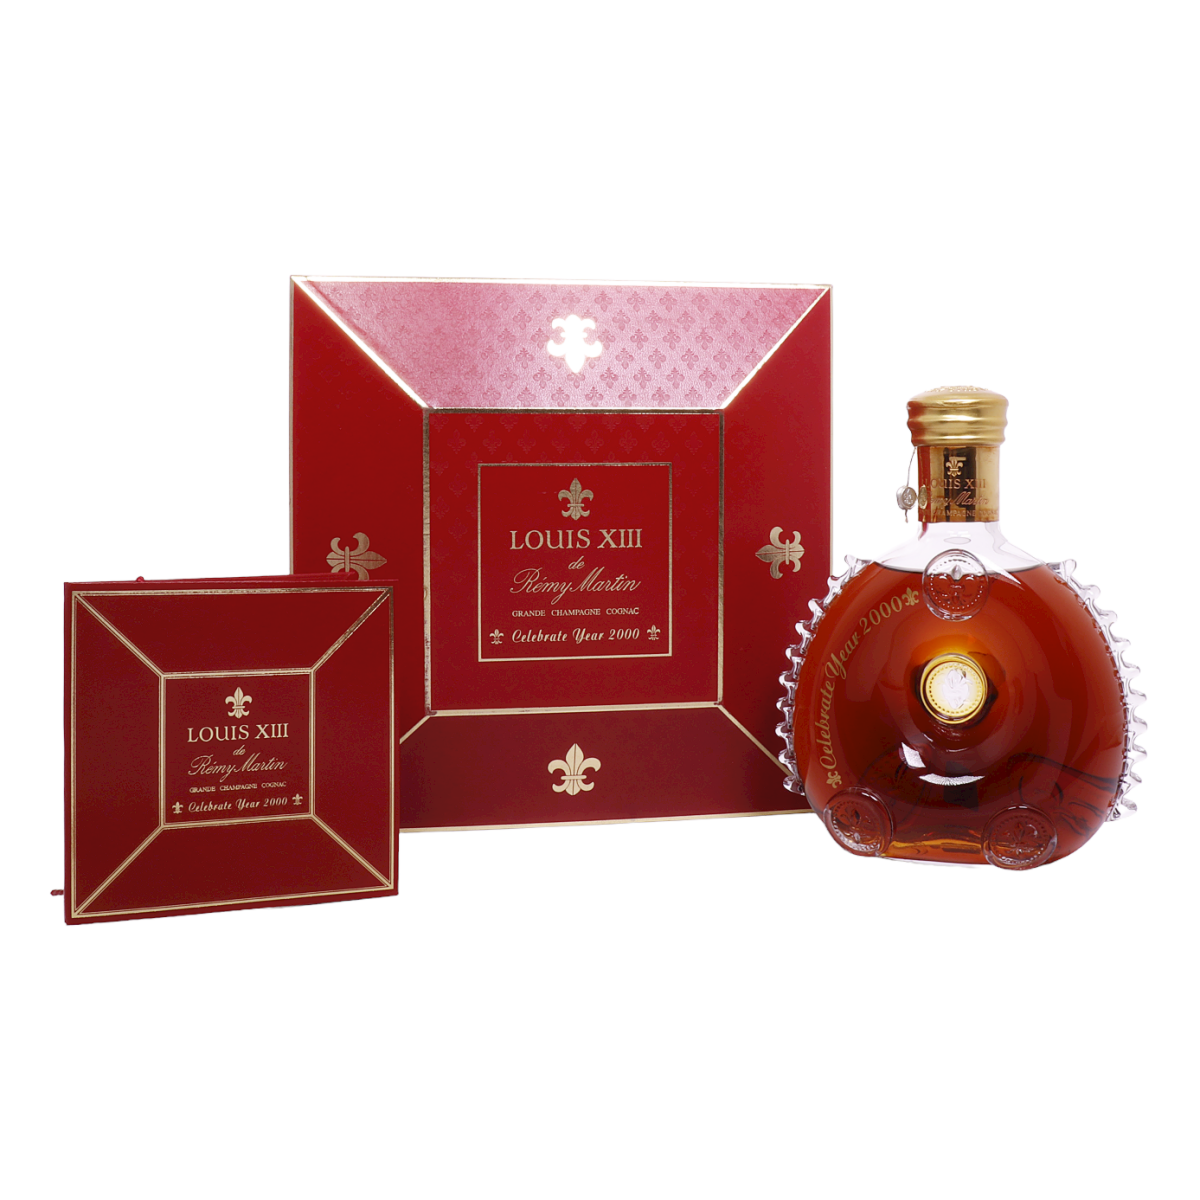 Baccarat X Remy Martin Vintage Louis XIII Cognac Bottle